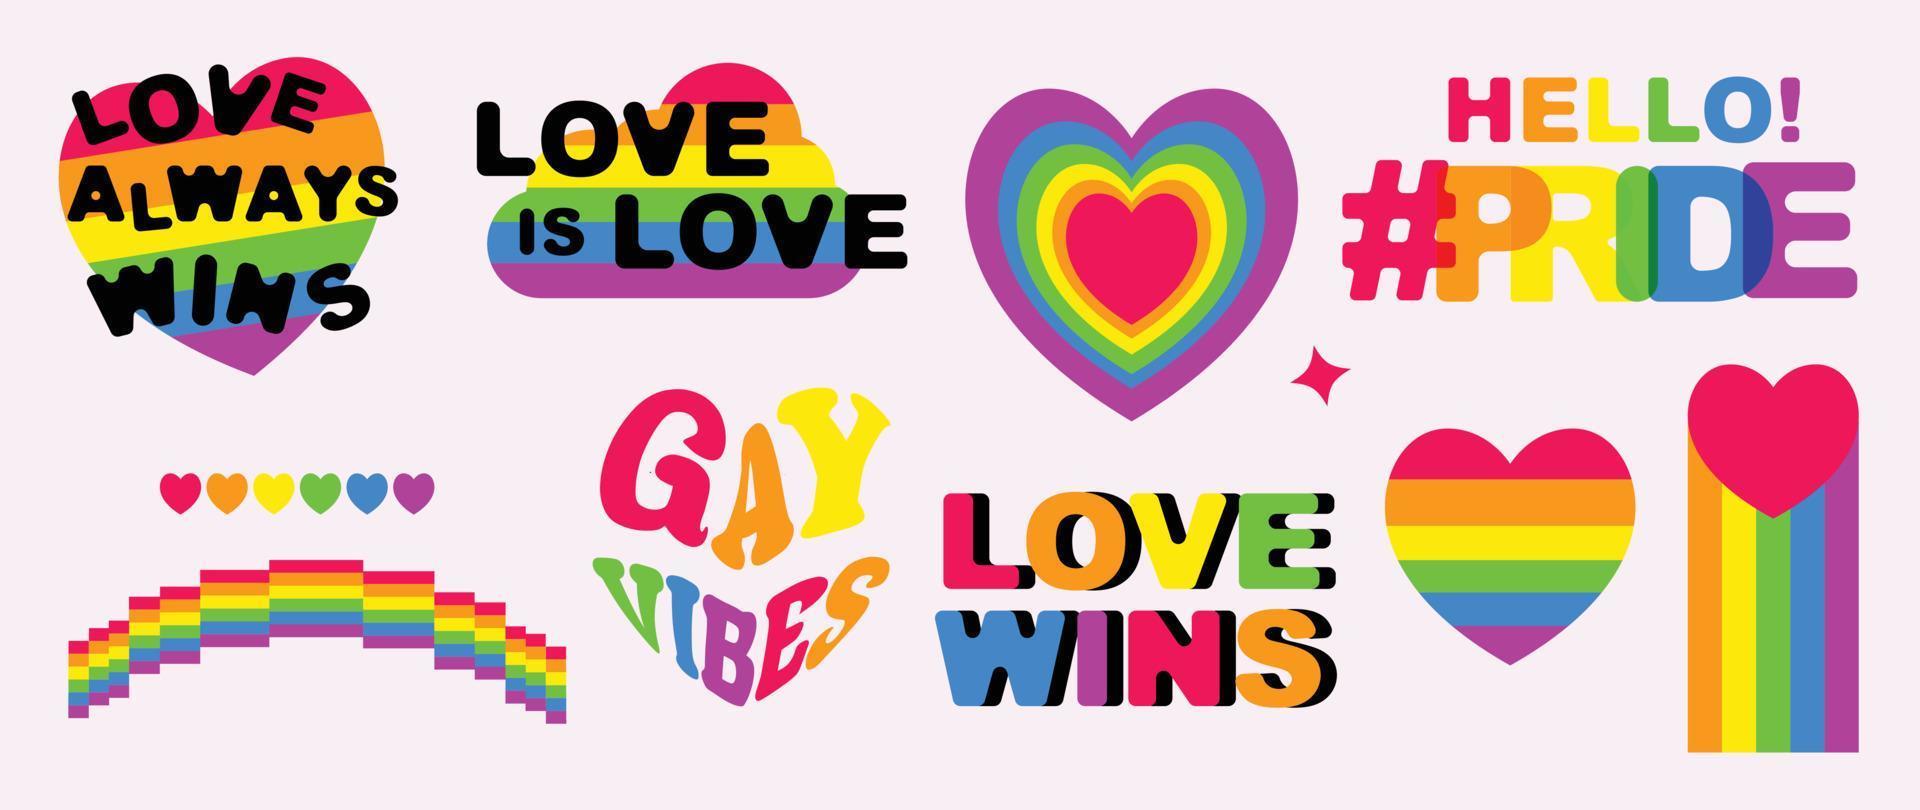 contento orgullo lgbtq elemento colocar. lgbtq comunidad símbolos con arcoíris, corazón, cita. elementos ilustrado para orgullo mes, bisexual, Transgénero, género igualdad, pegatina, derechos concepto. vector